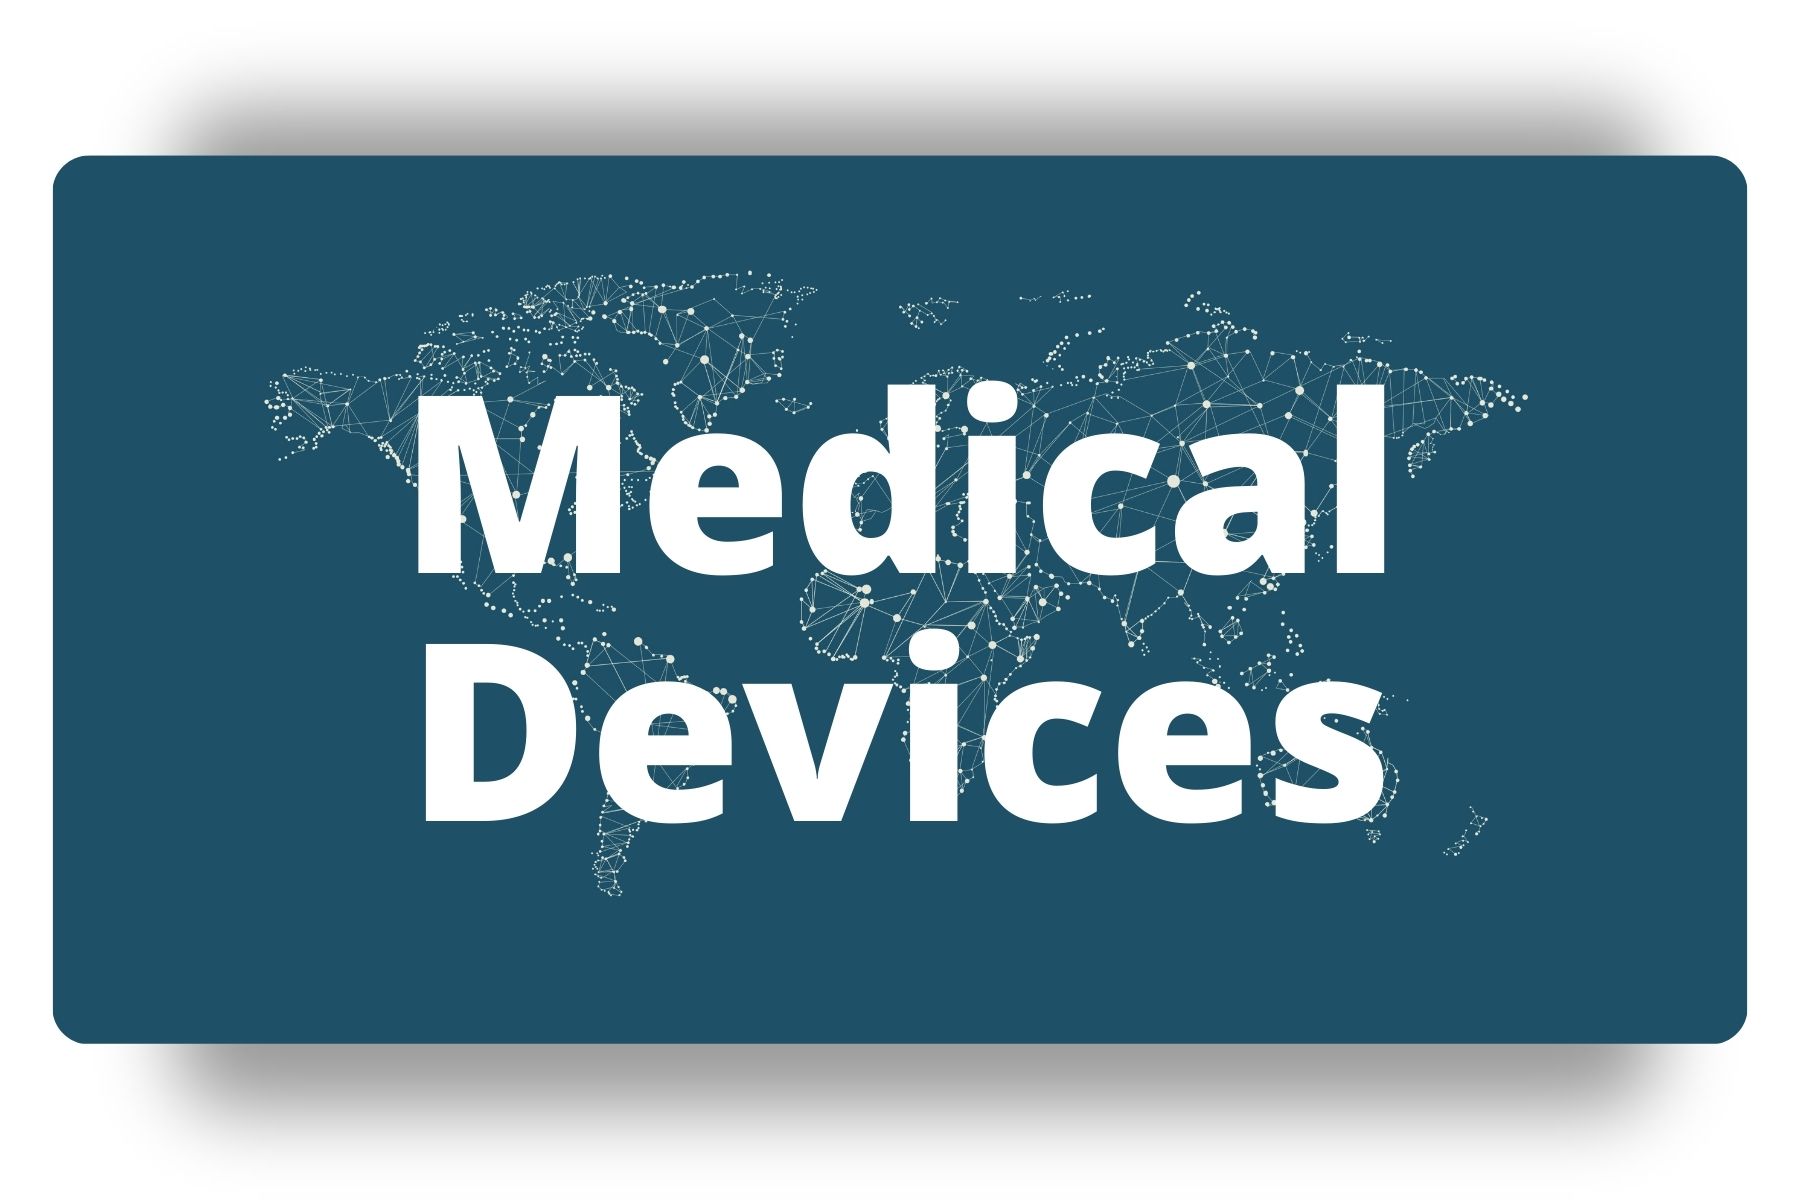 Medical Devices DSMN8 Leaderboard Hub Image